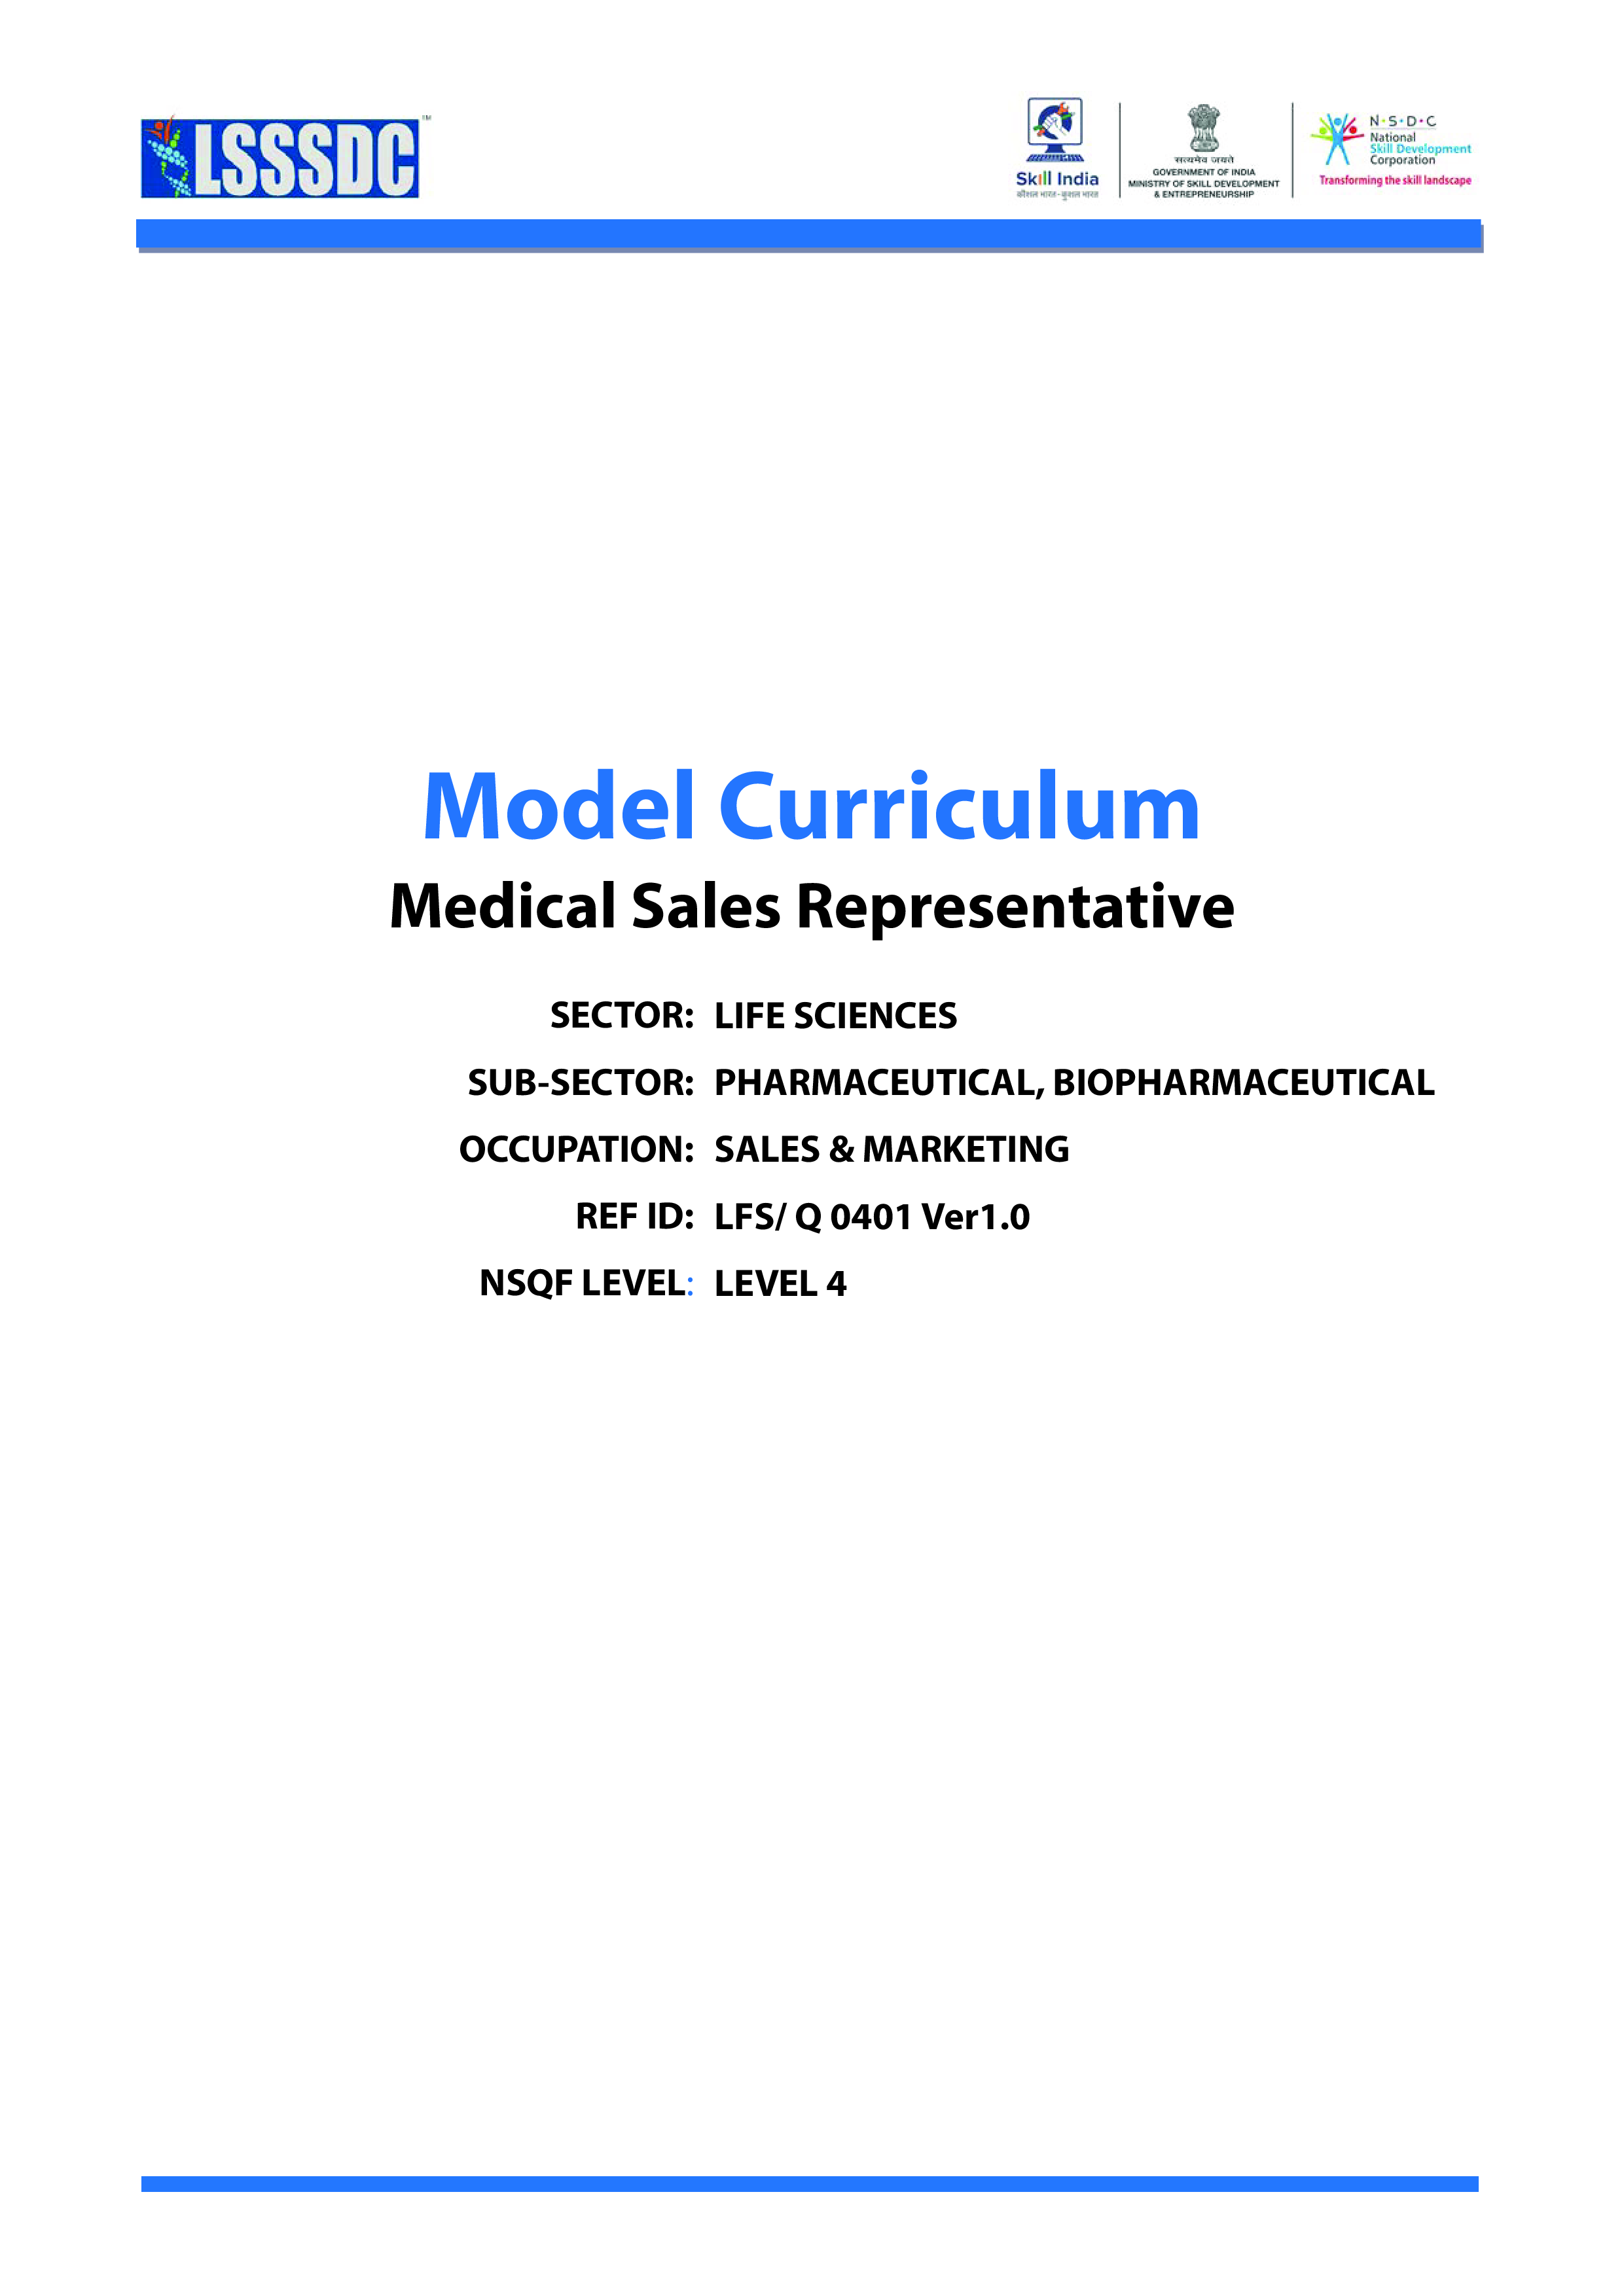 Medical Representative Daily Call Report 模板